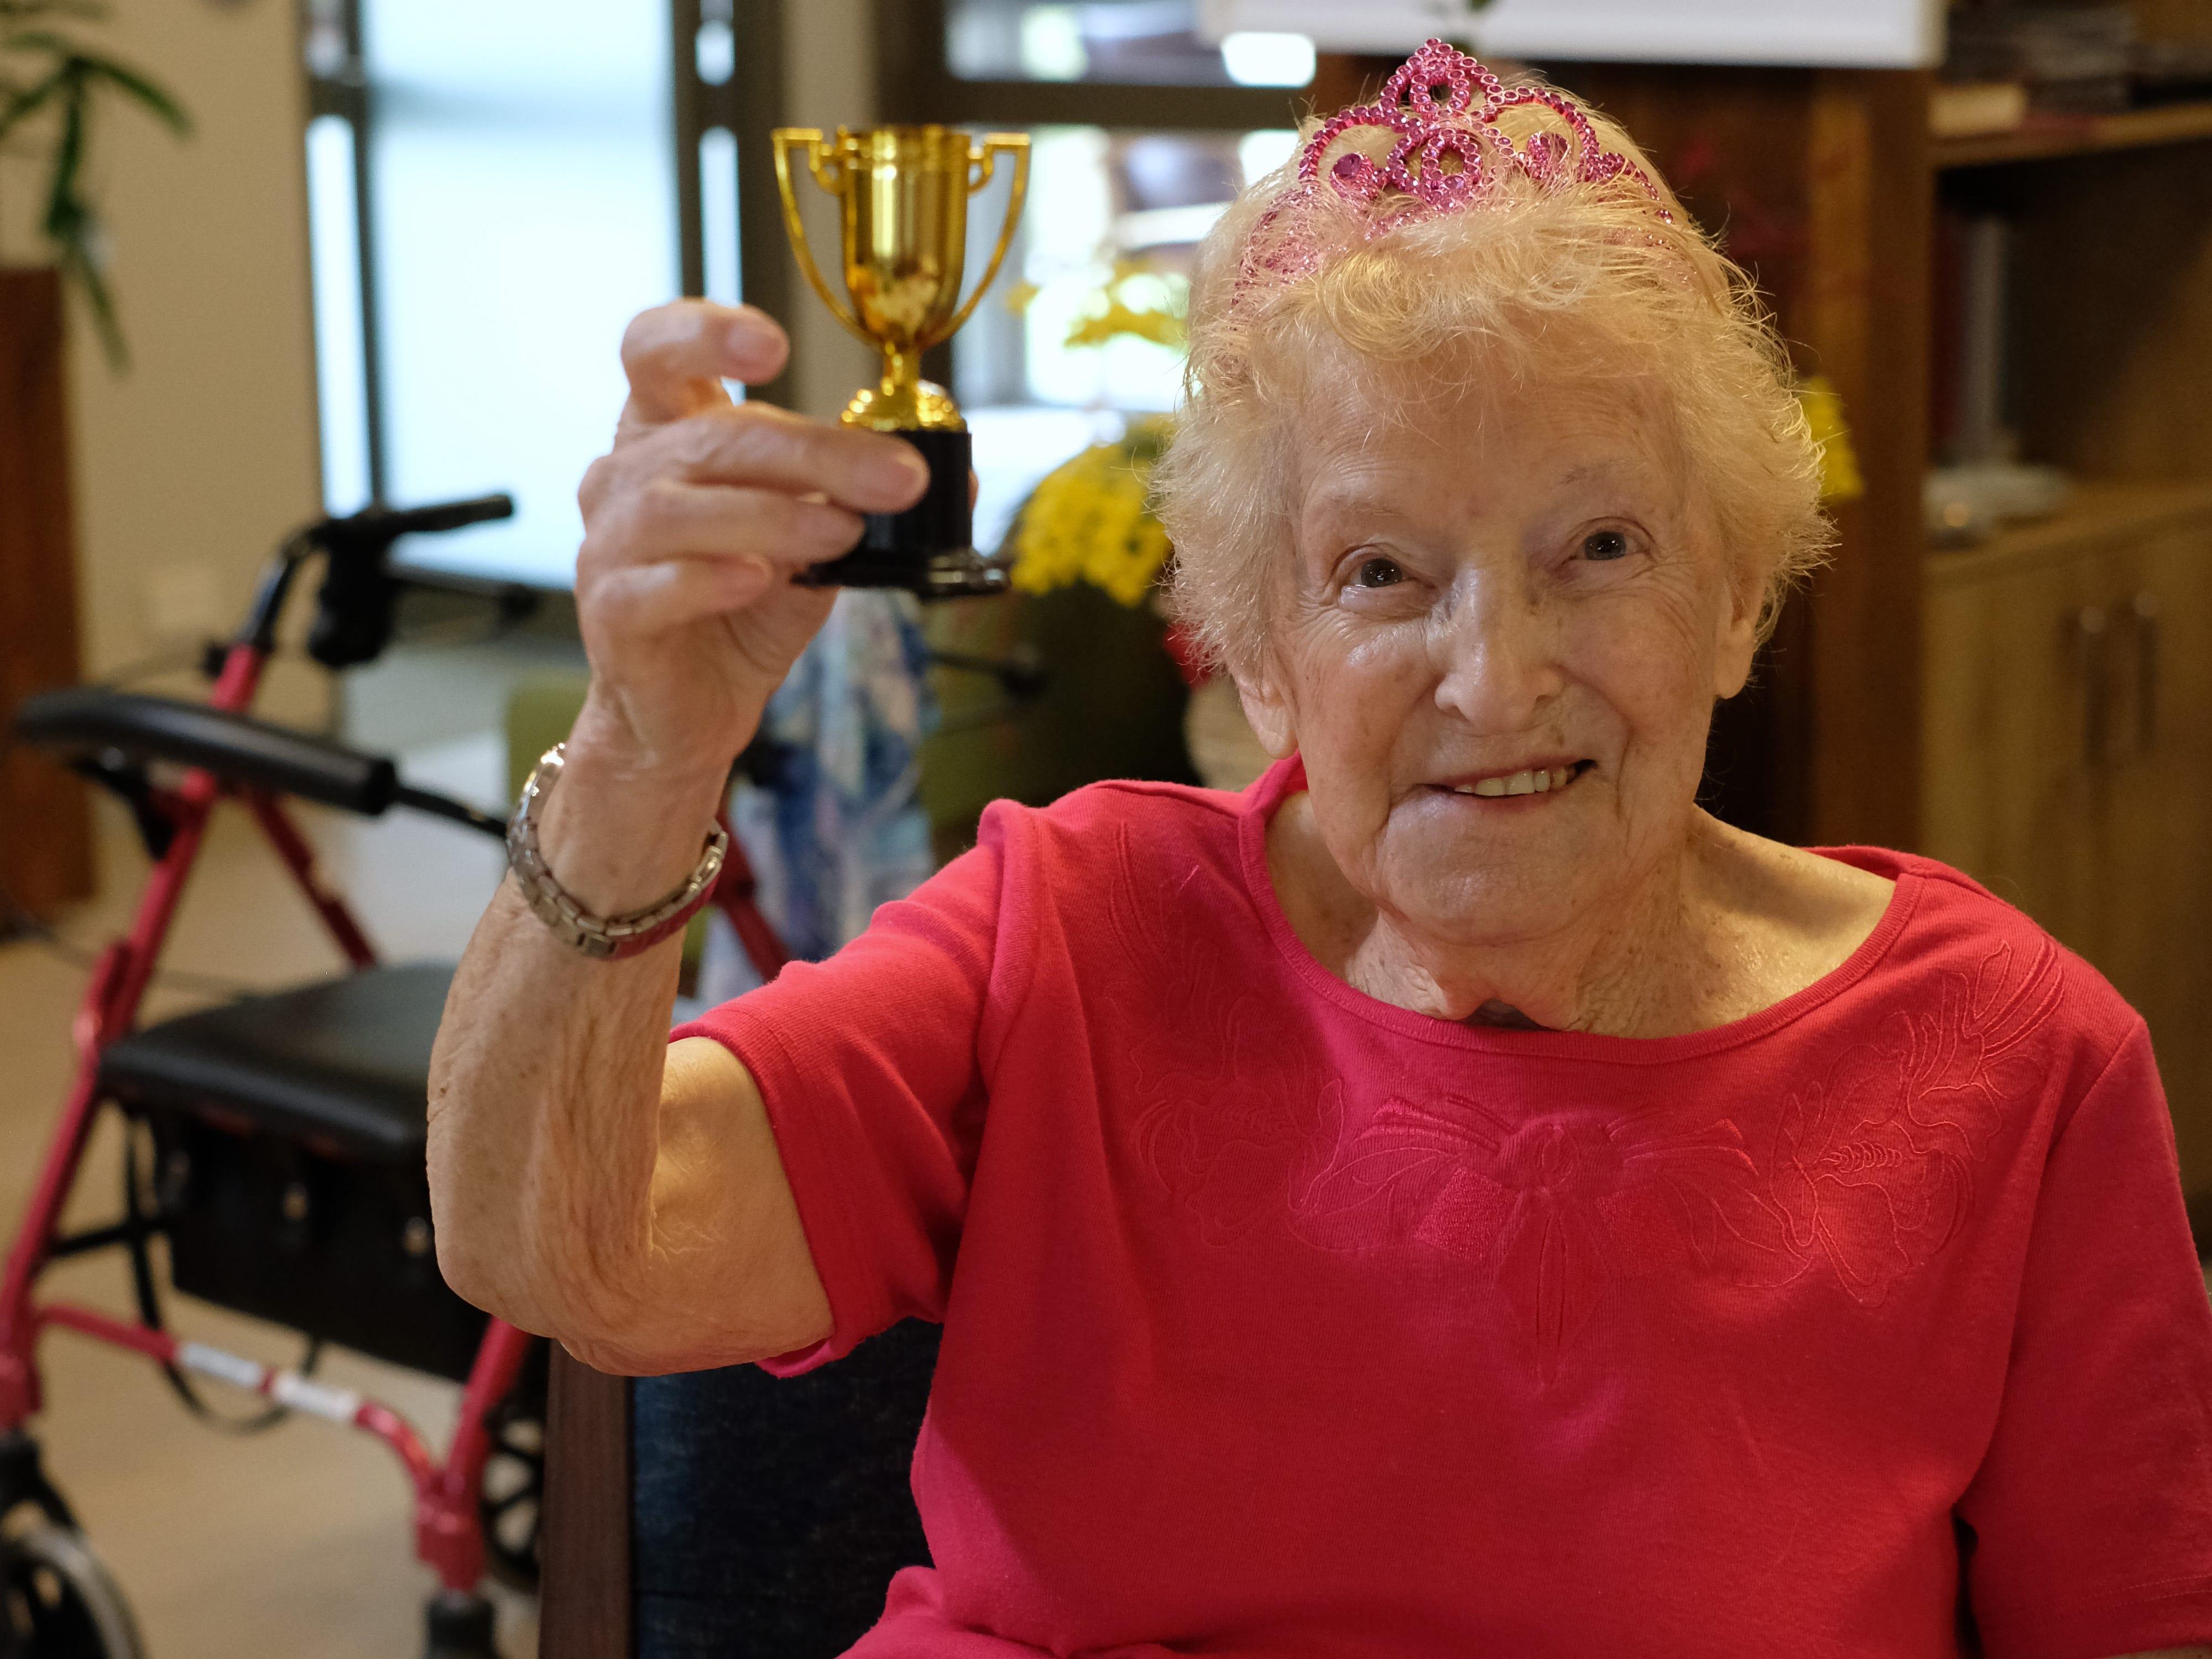 106歳の女性が語る長寿の習慣…「とにかく笑顔で、人生を楽しむこと」